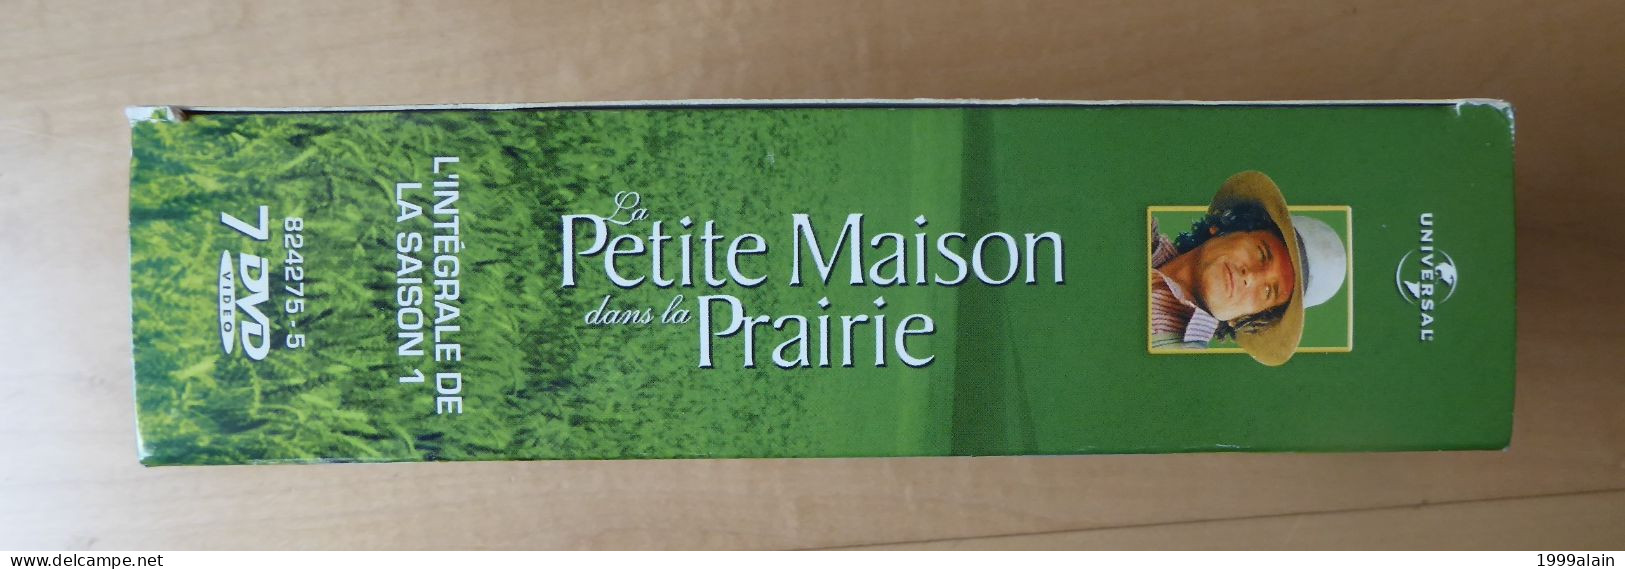 LA PETITE MAISON DANS LA PRAIRIE SAISON 1 - COFFRET 7 DVD - Series Y Programas De TV